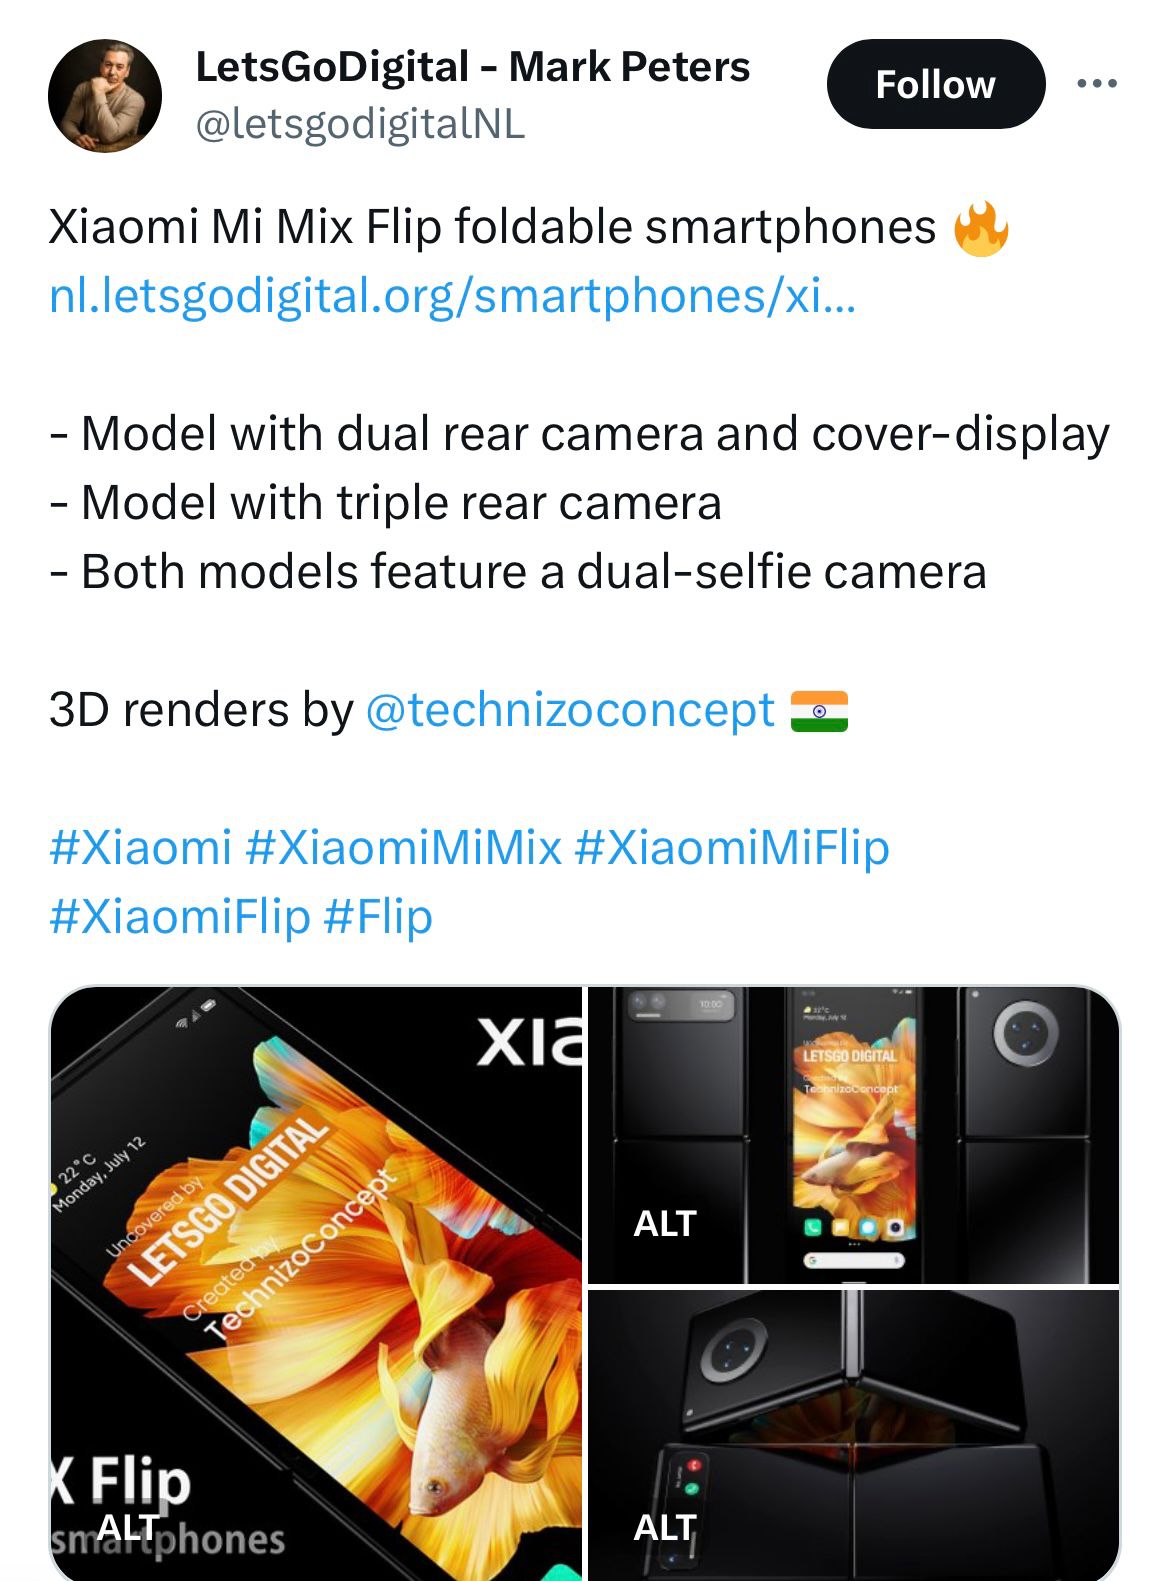 Xiaomi's Upcoming Mix Flip